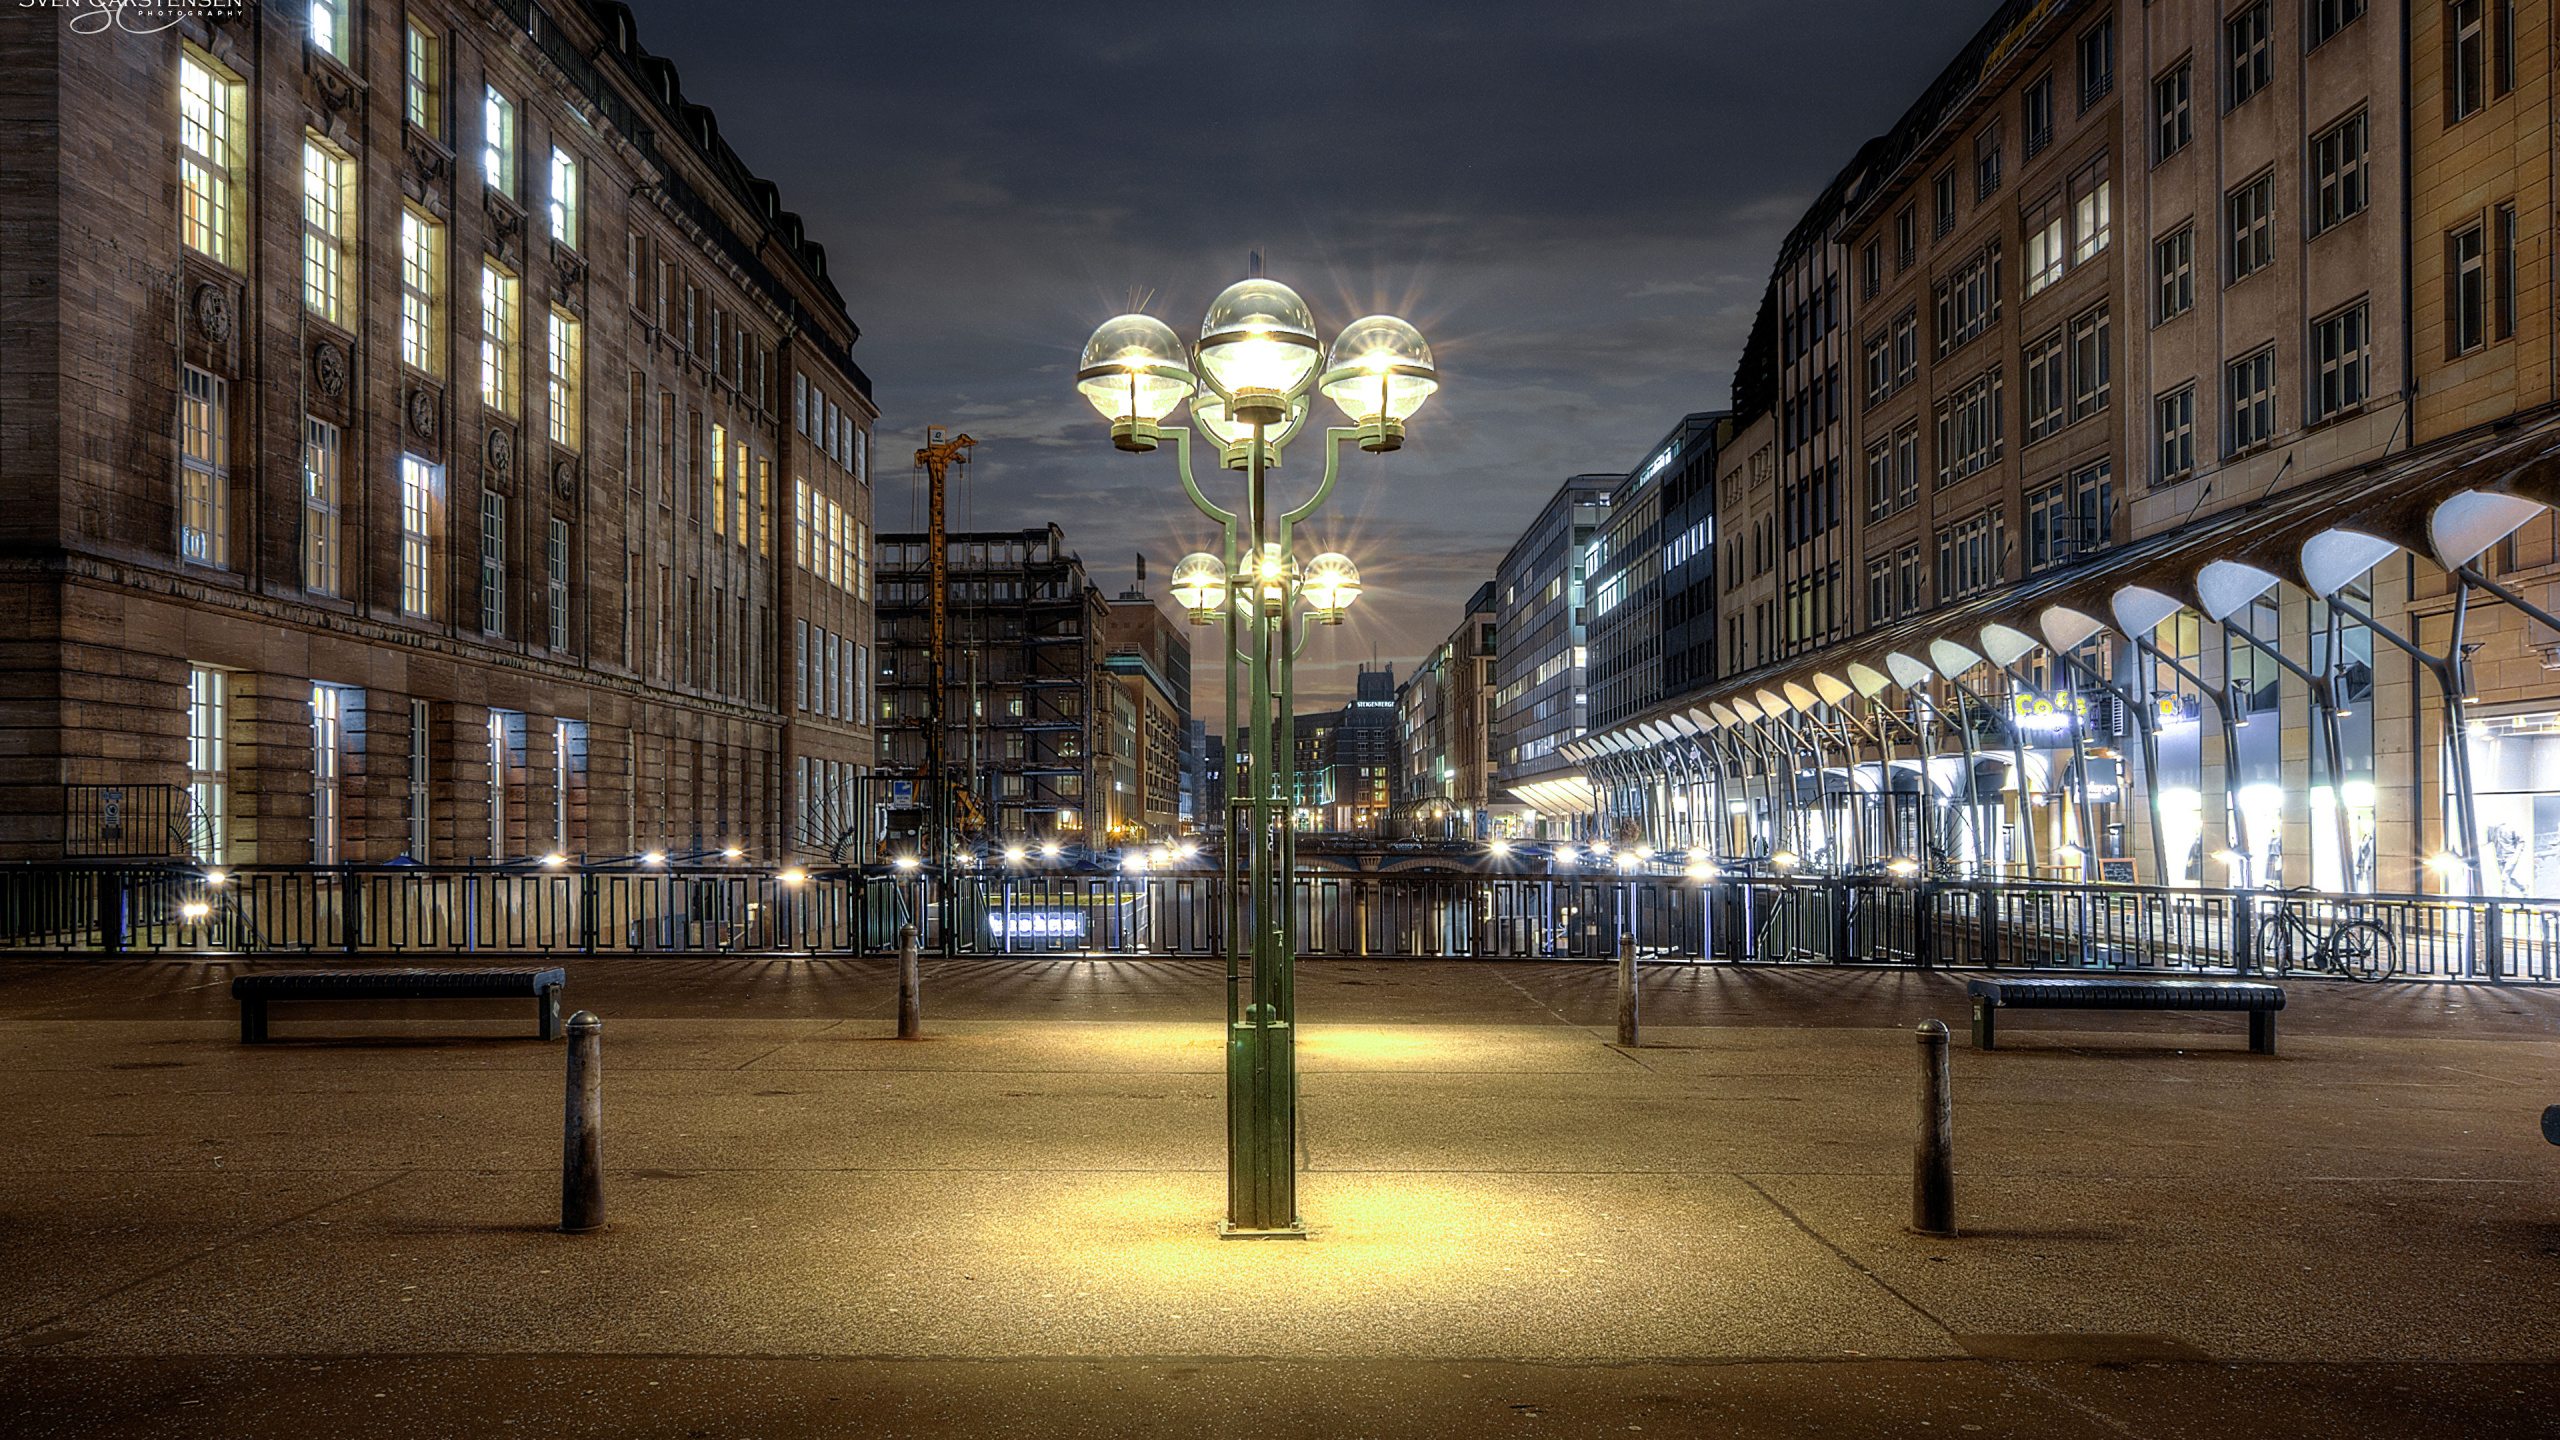 Lampadaires Éclairés au Milieu de la Ville Pendant la Nuit. Wallpaper in 2560x1440 Resolution